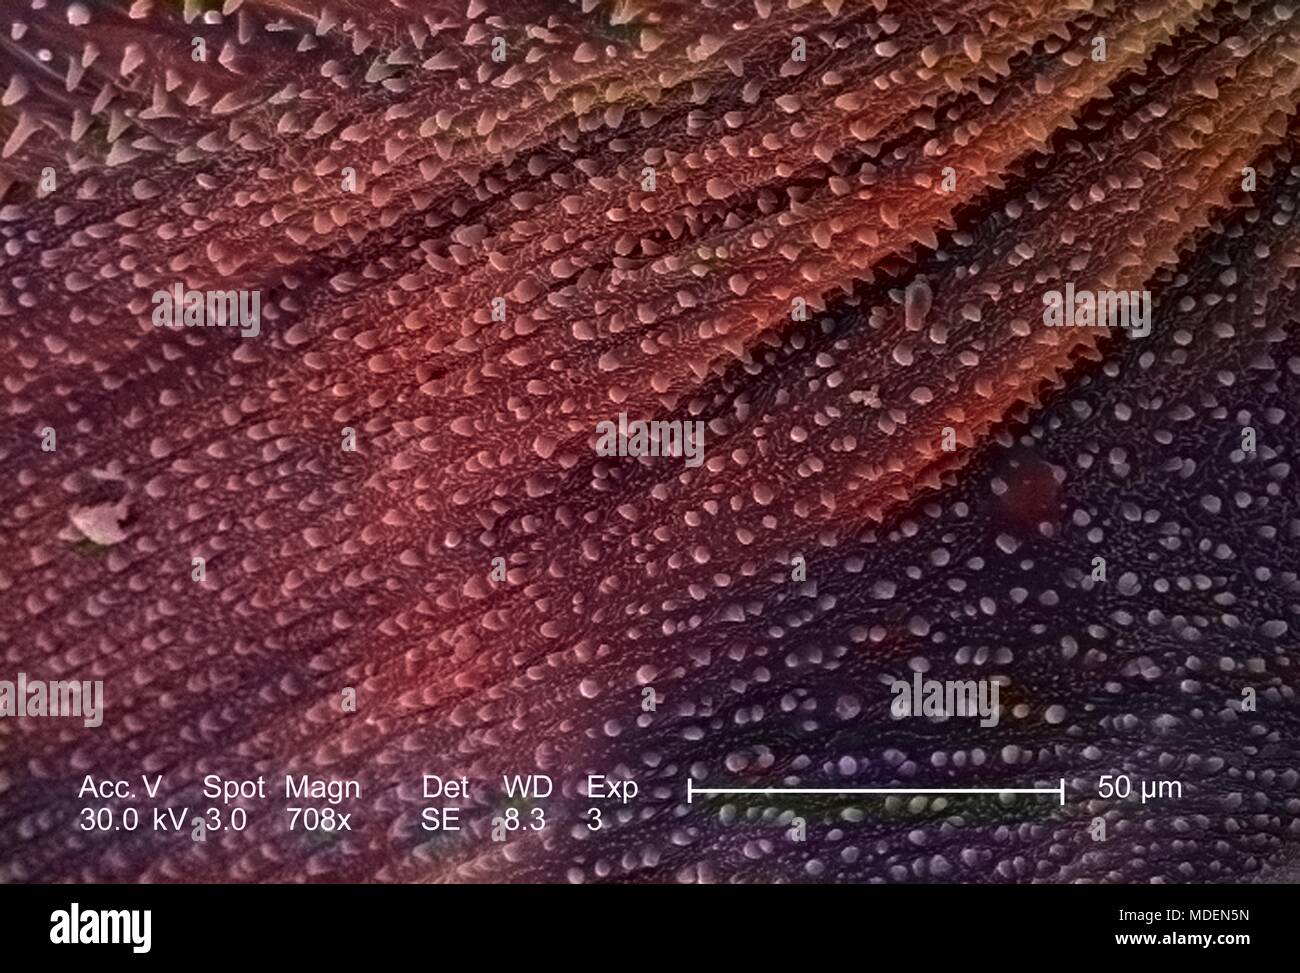 Ornamental geschmückt exoskeletal Oberfläche von einem unbekannten Insekt im 2832 x offenbart vergrößerte Rasterelektronenmikroskopische (SEM) Bild, 2005. Mit freundlicher Seuchenkontrollzentren (CDC)/Janice Haney Carr. Hinweis: Das Bild hat digital über ein modernes Prozess eingefärbt worden. Farben können nicht wissenschaftlich korrekt sein. () Stockfoto